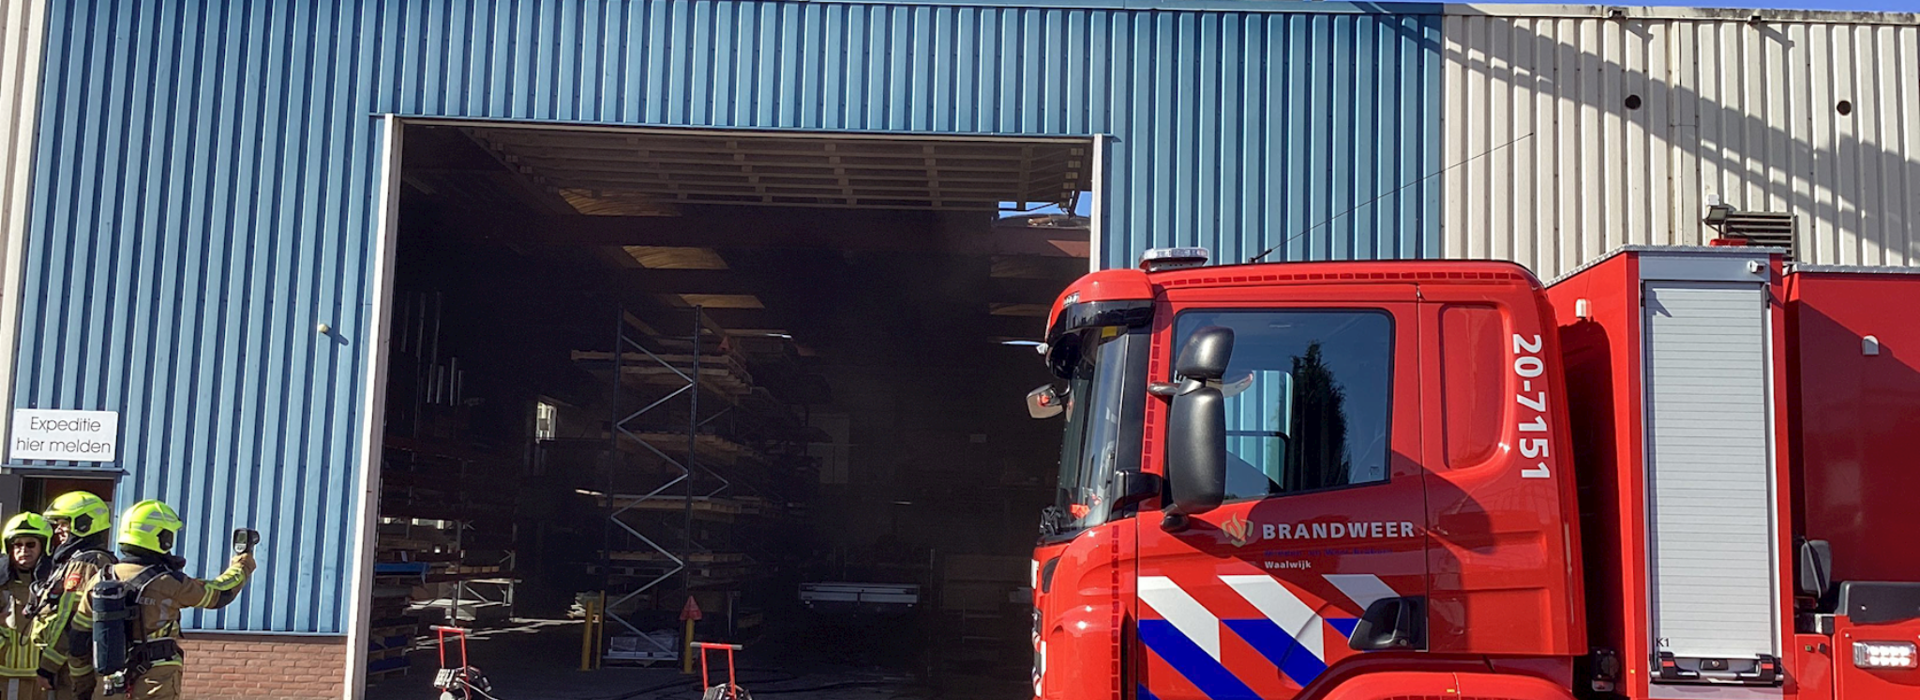 Bedrijfsloods met een brandweerauto en hoogwerker boven het dak. De brand is uit, de schade is deels zichtbaar. Nacontrole wordt uitgevoerd. 